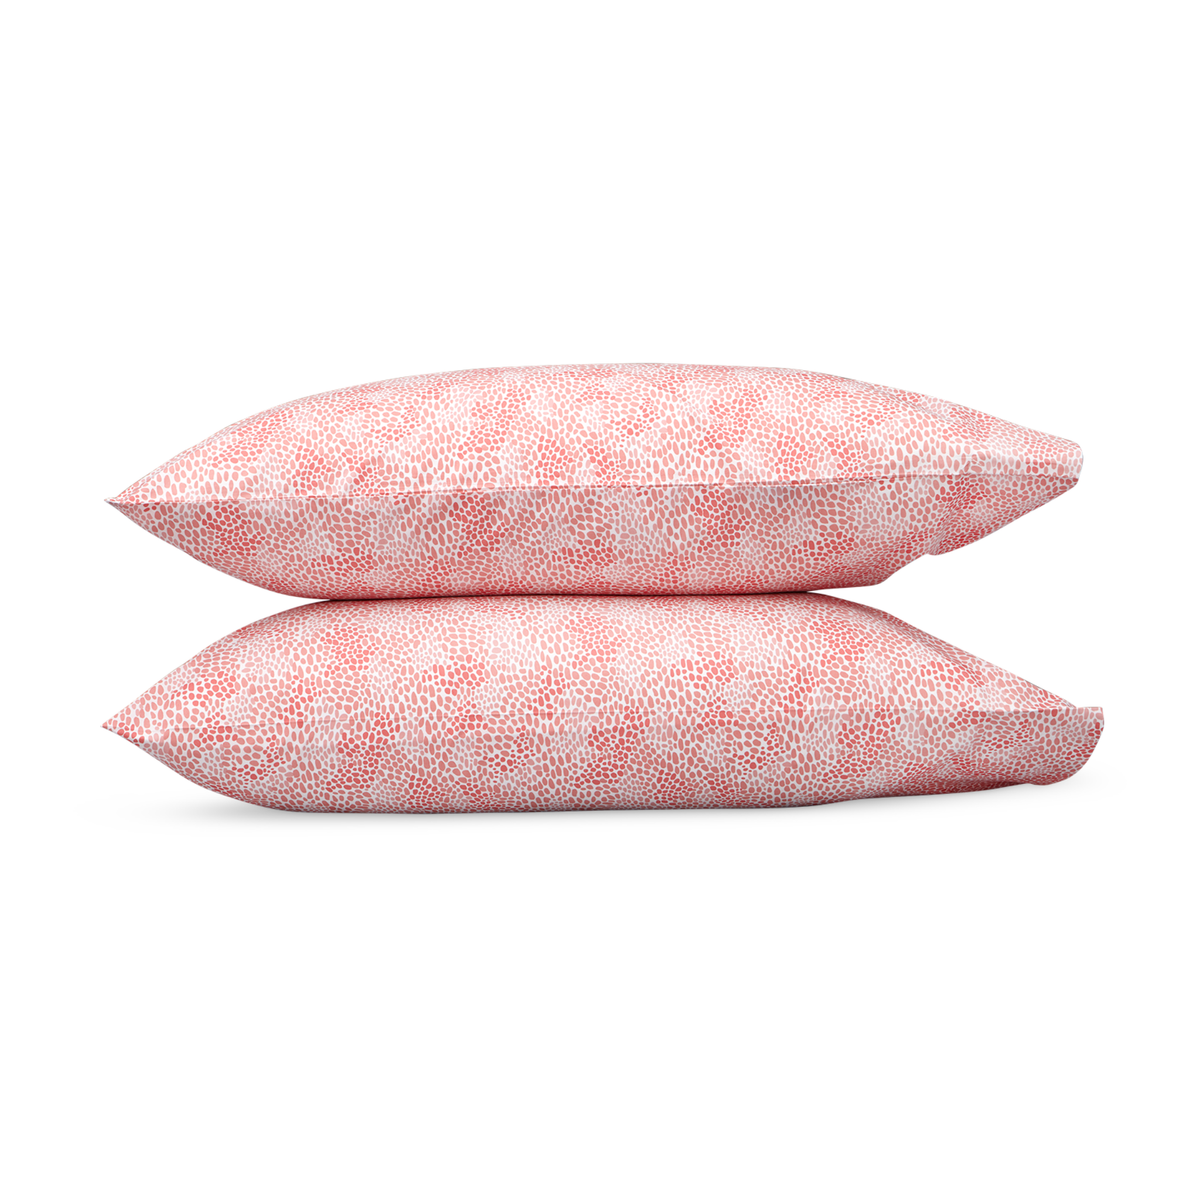 Pair of Pillowcases of Lulu DK Matouk Nikita Bedding in Coral Color